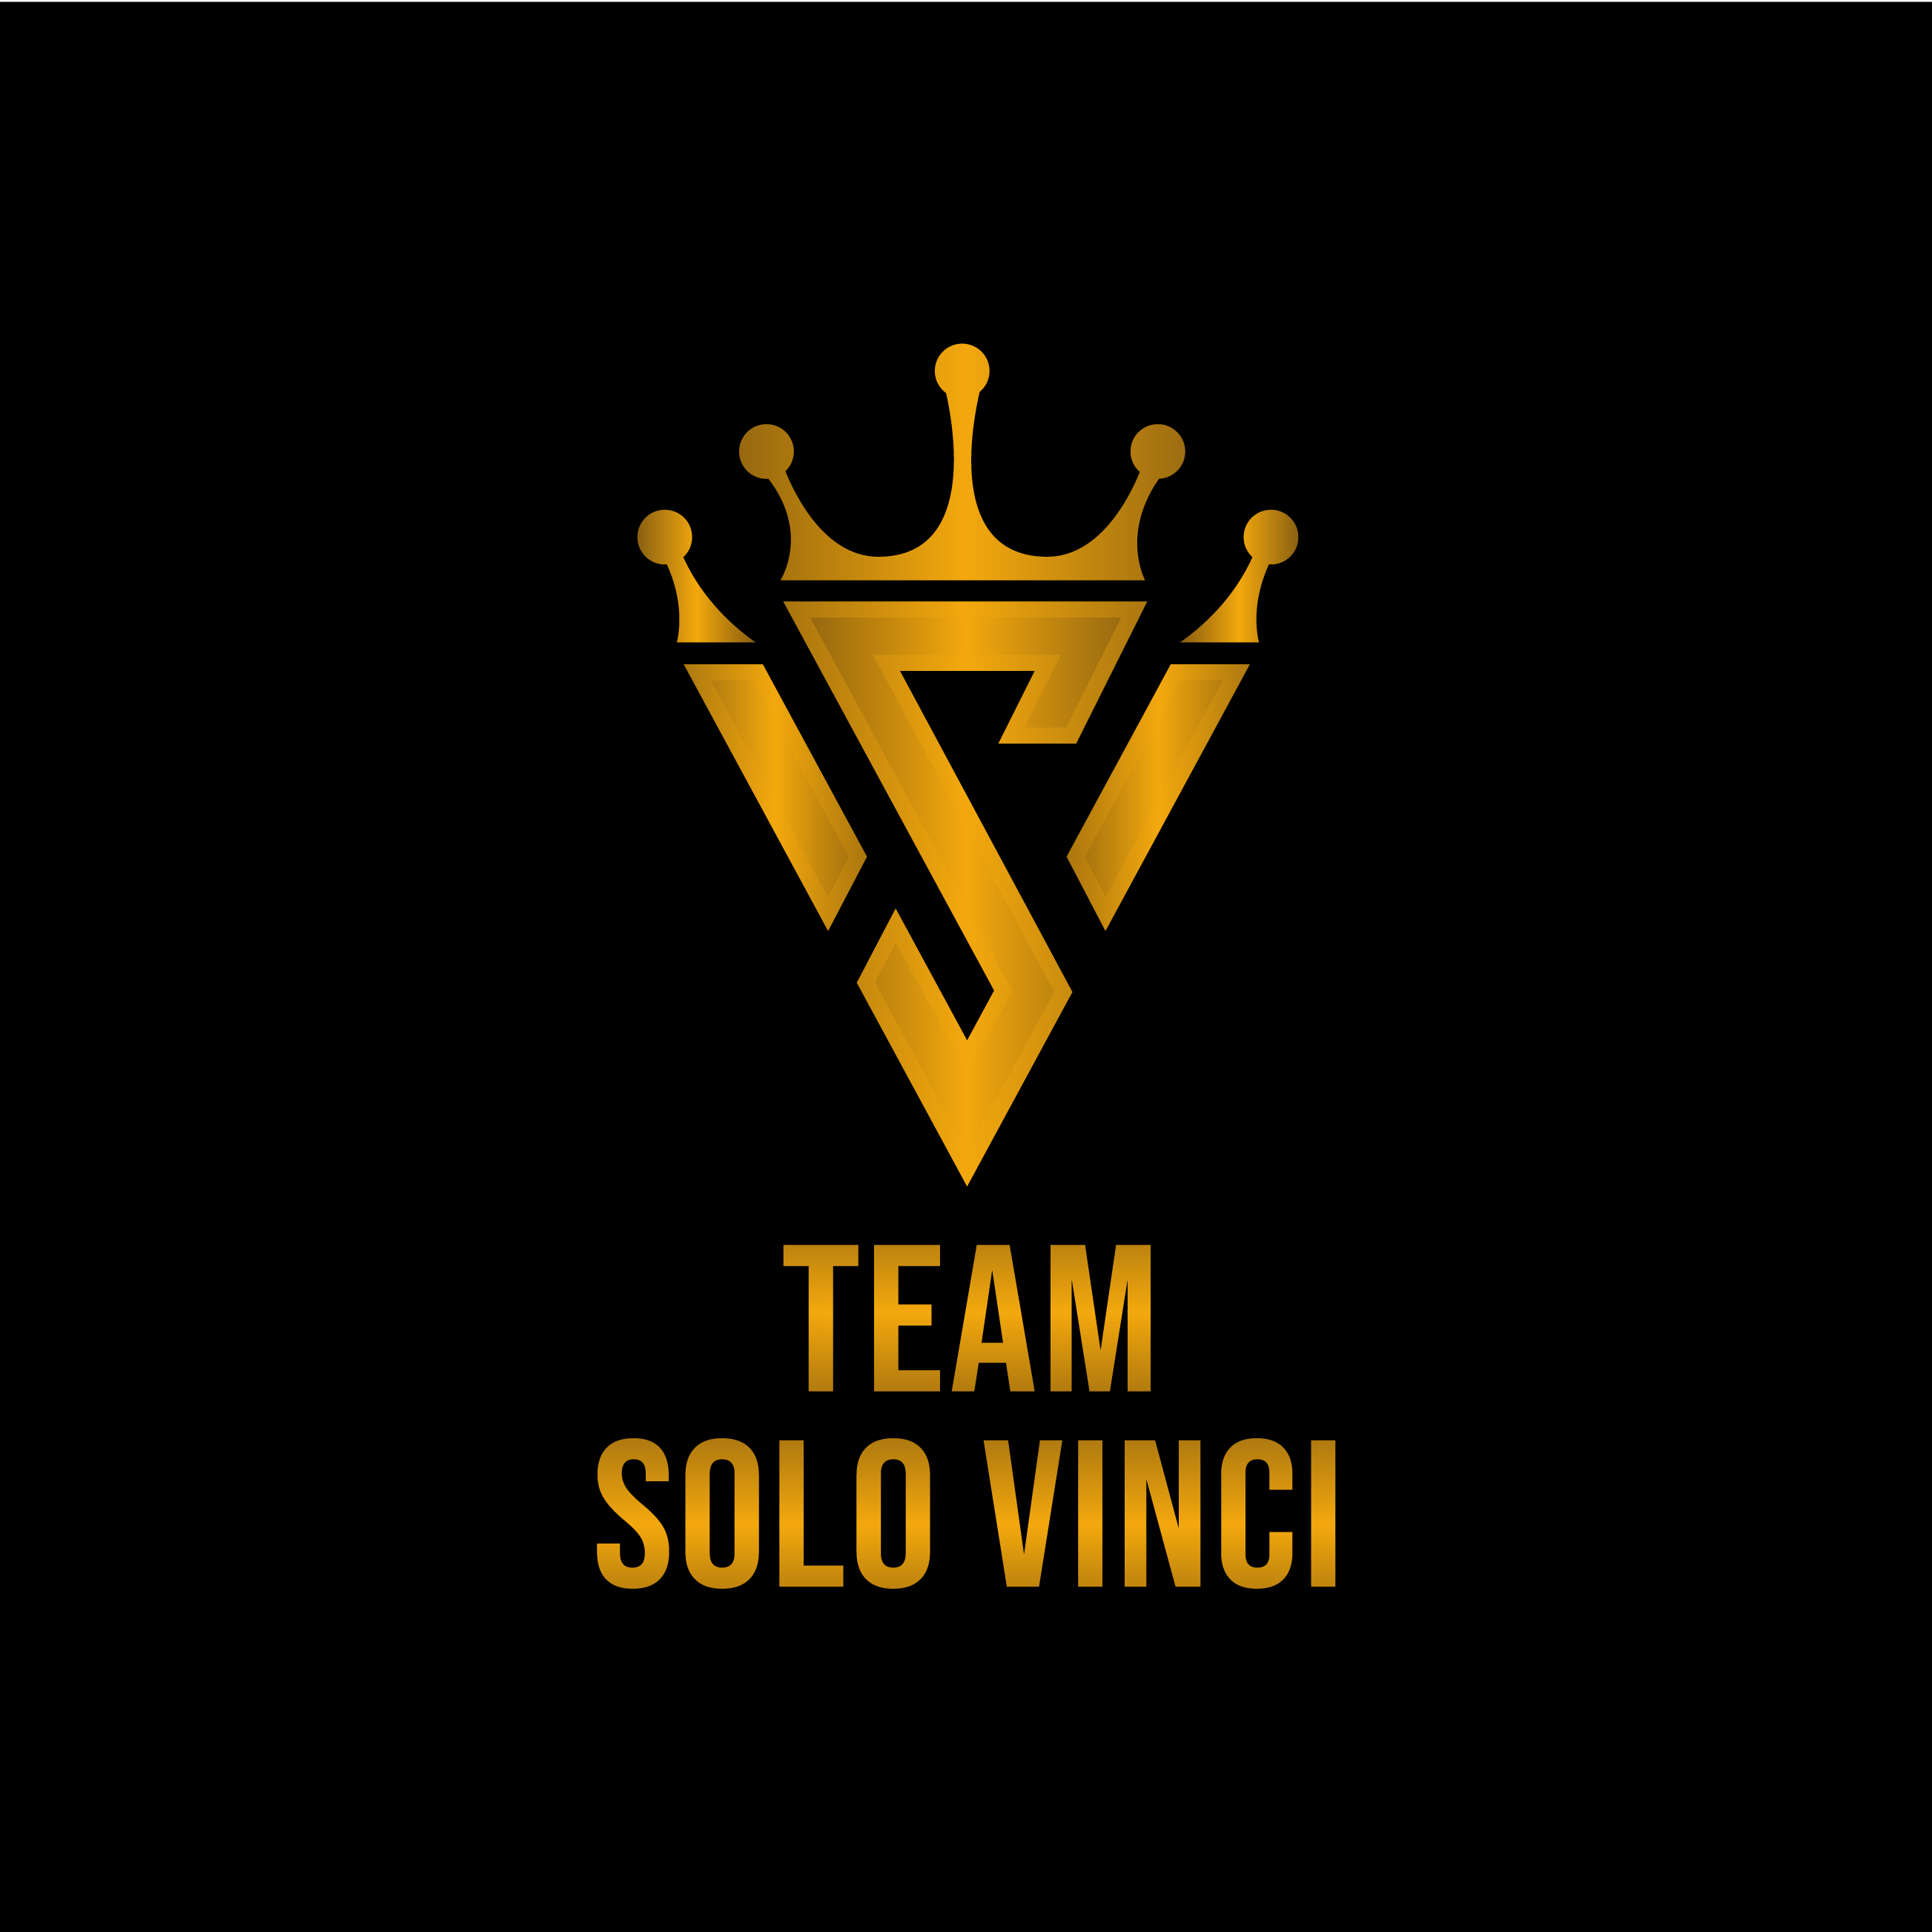 Club Image for SOLO VINCI